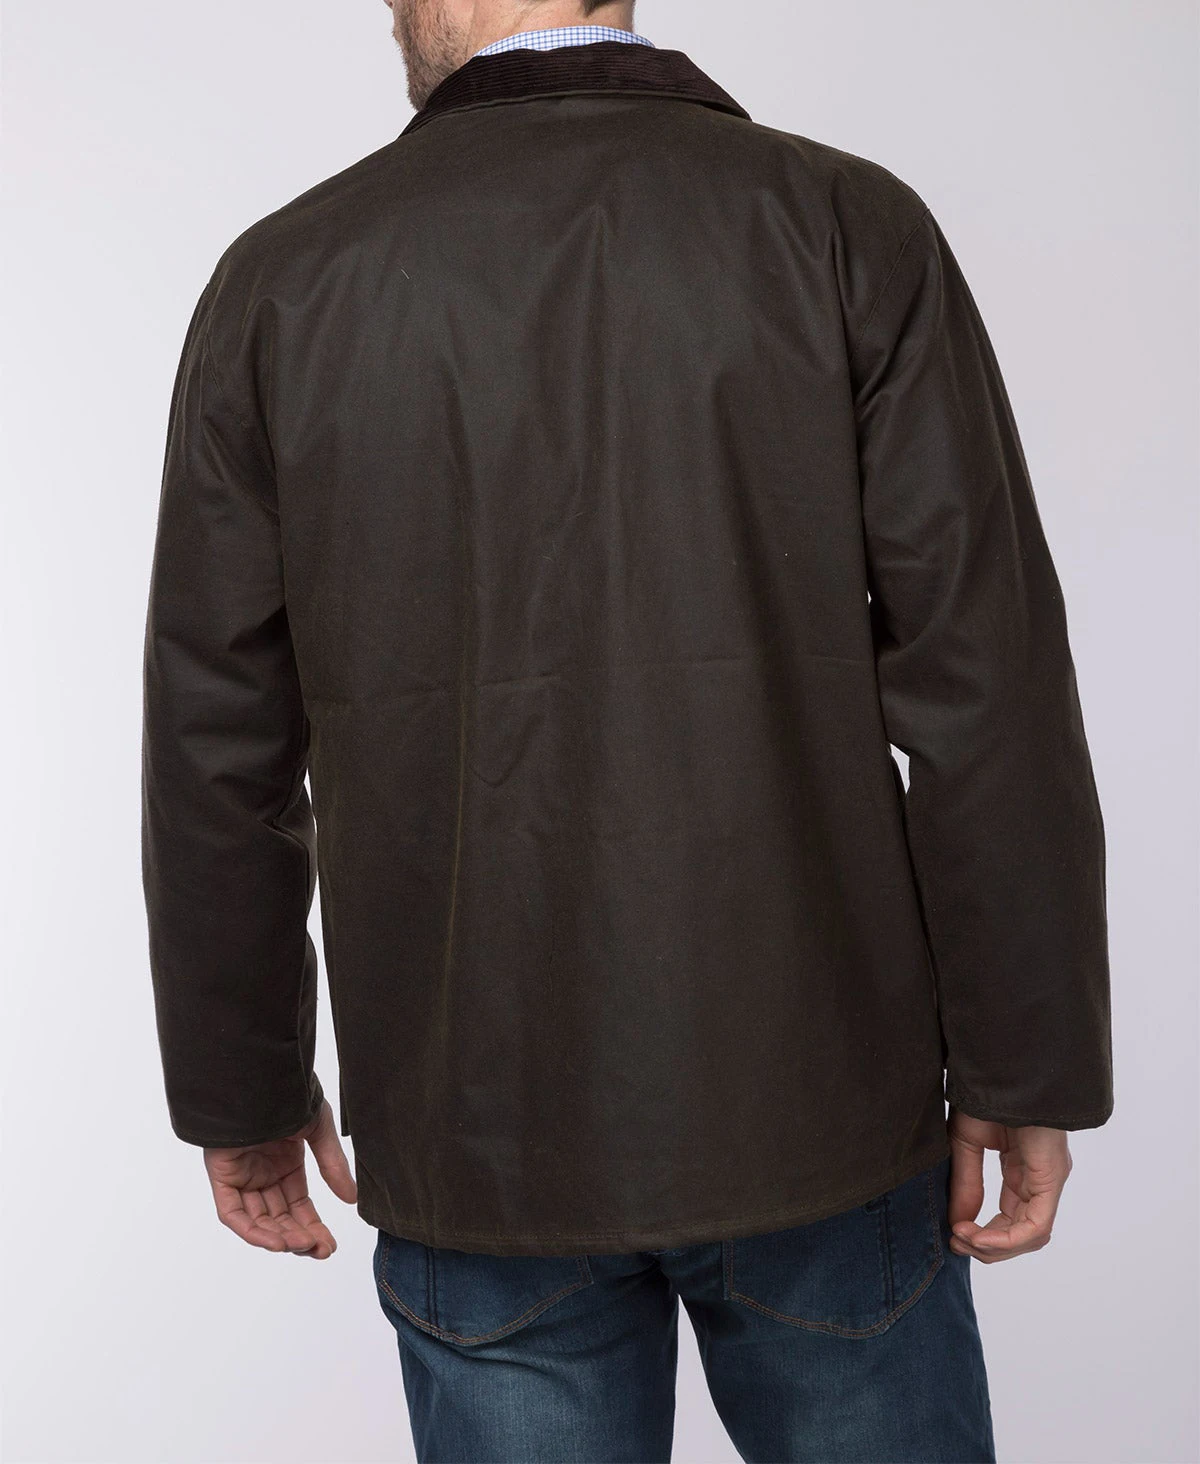 Waxed Canvas Jacket Men's Overalls Windproof Slim Coat Vintage Casual ...